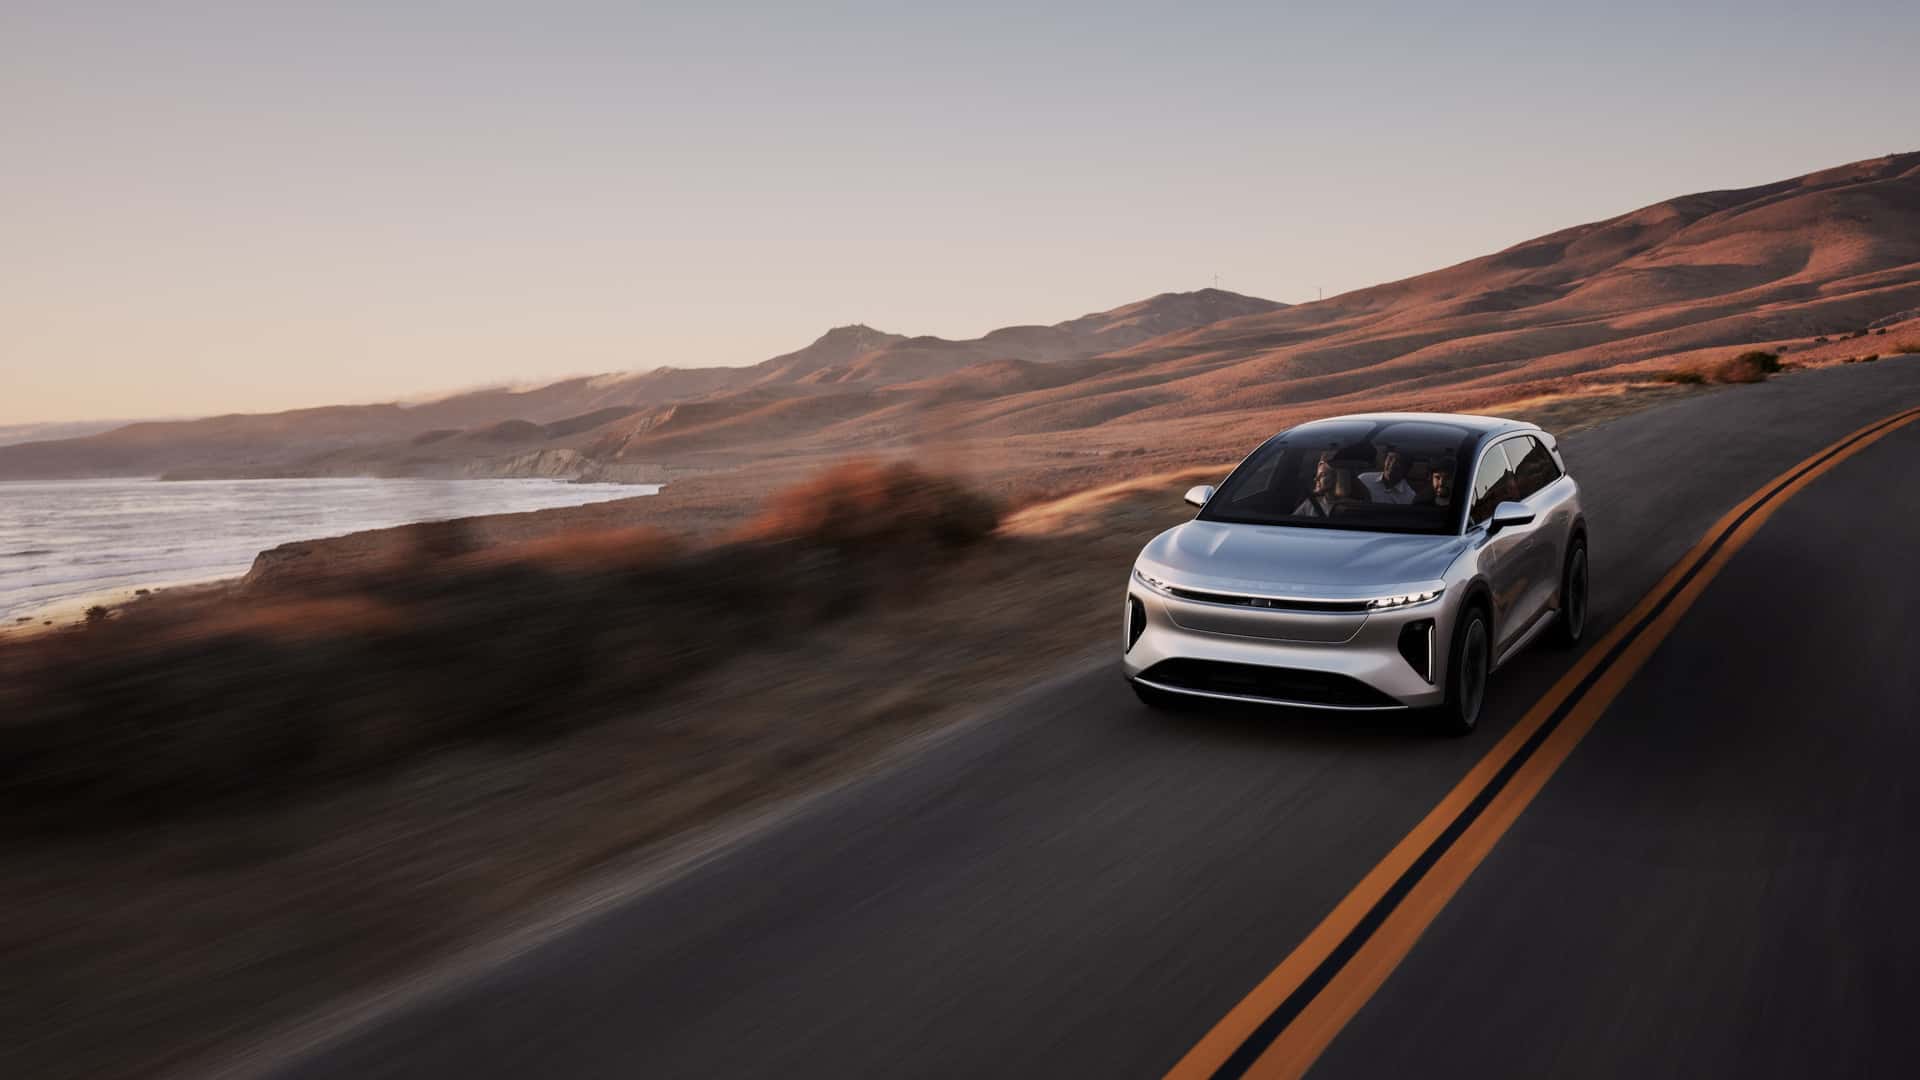 لوسيد جرافيتي SUV الكهربائية الفاخرة تنطلق رسمياً بمدى يتجاوز 700 كيلومتر وتسارع منافس للسيارات الخارقة 23